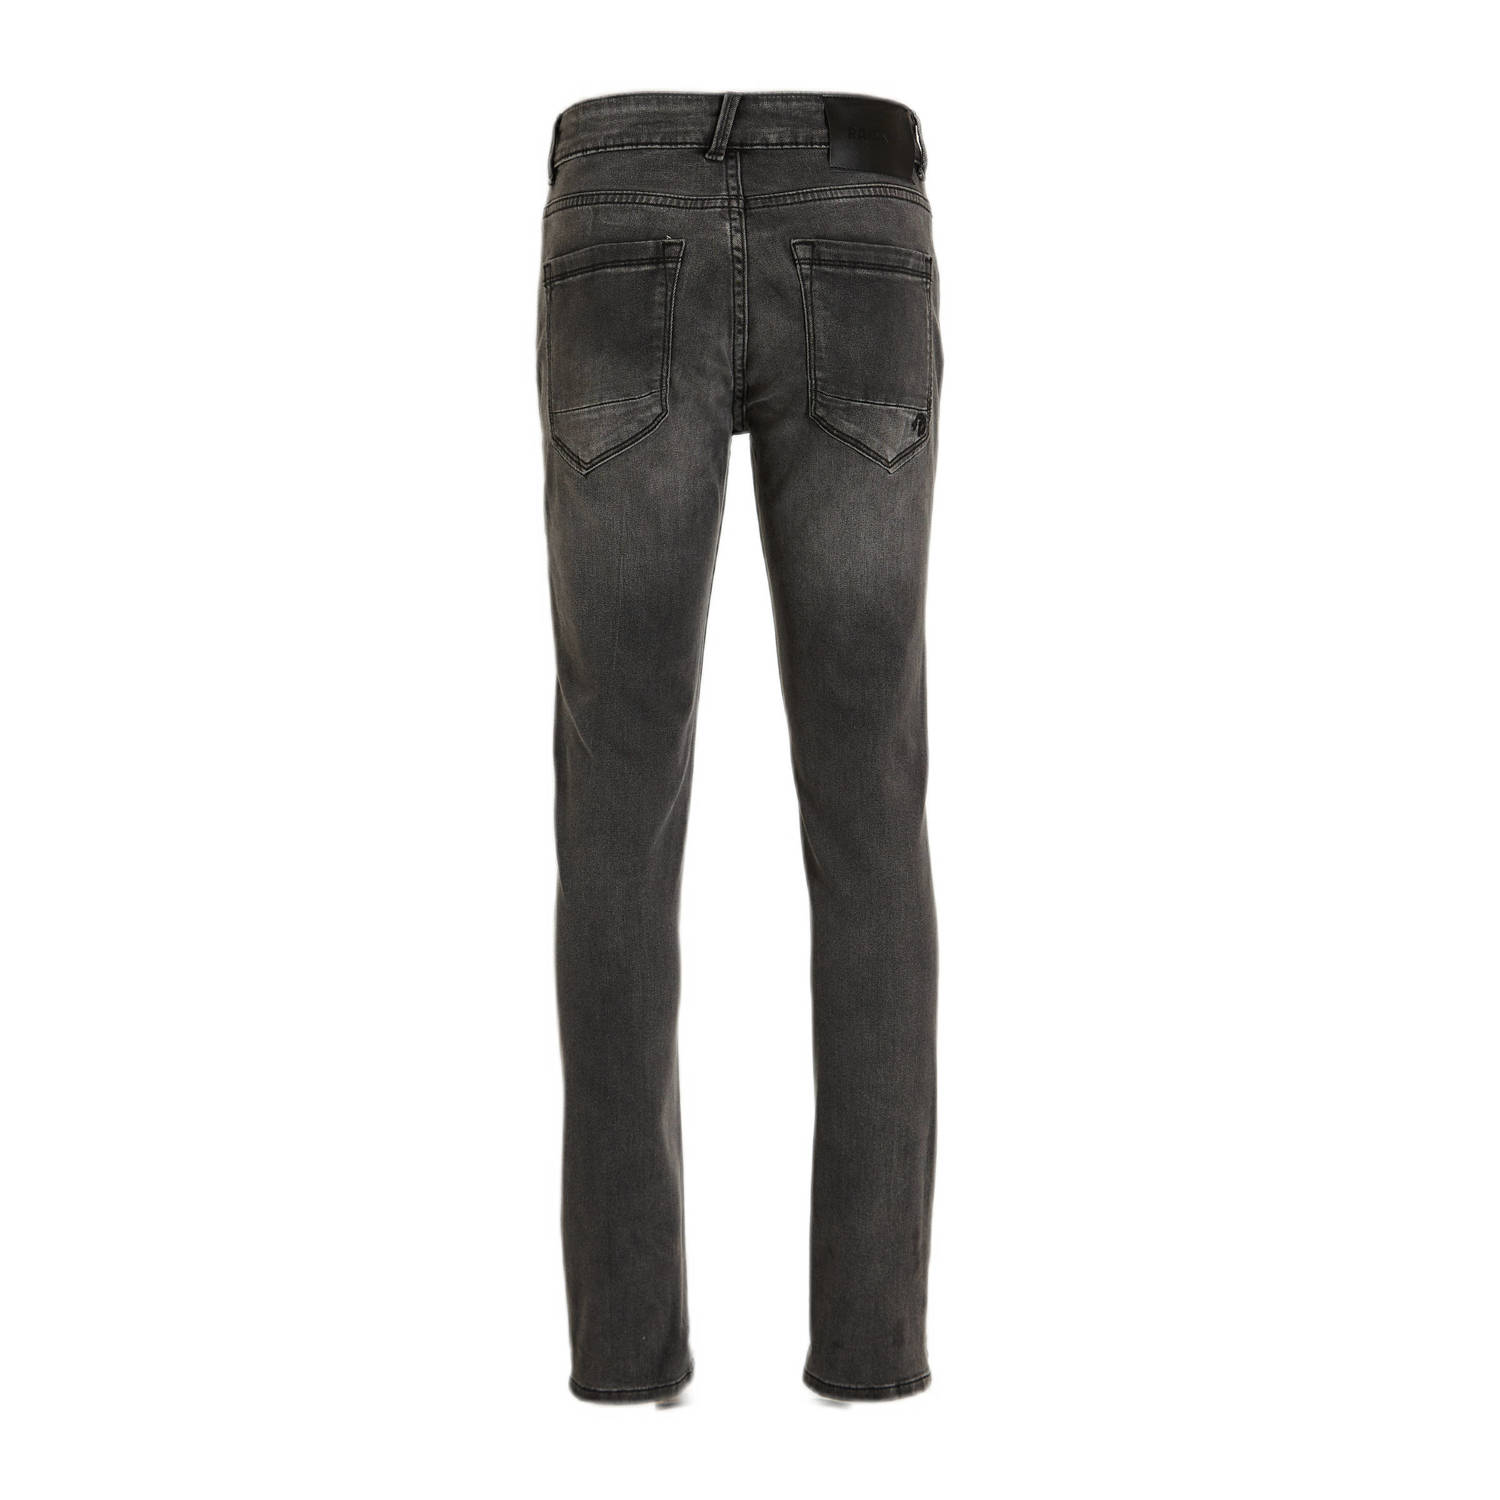 Raizzed slim fit jeans darm grey denim